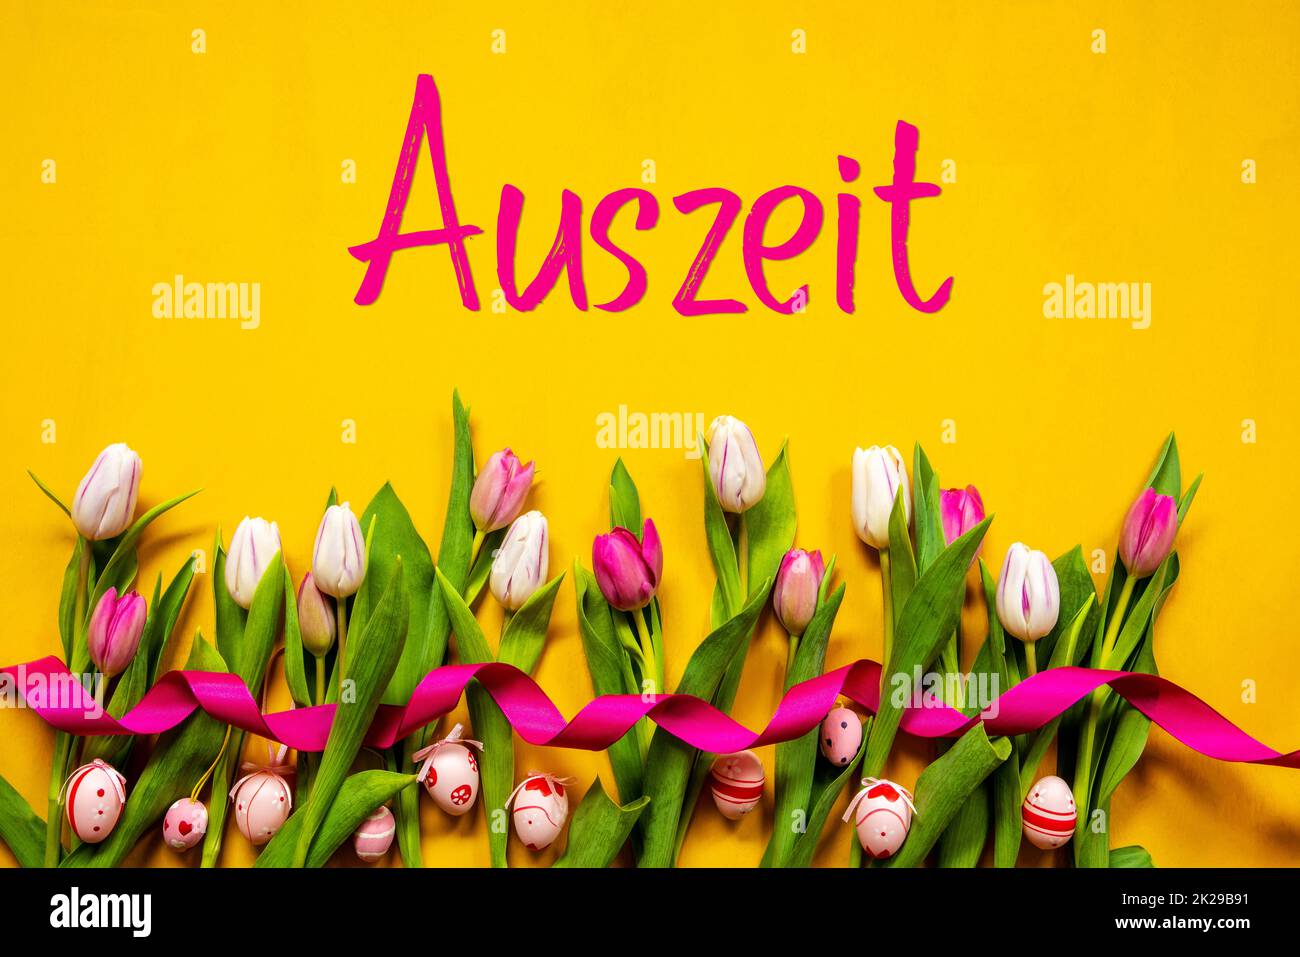 Coloré Tulip, Auszeit signifie temps d'arrêt, oeuf de Pâques, fond jaune Banque D'Images